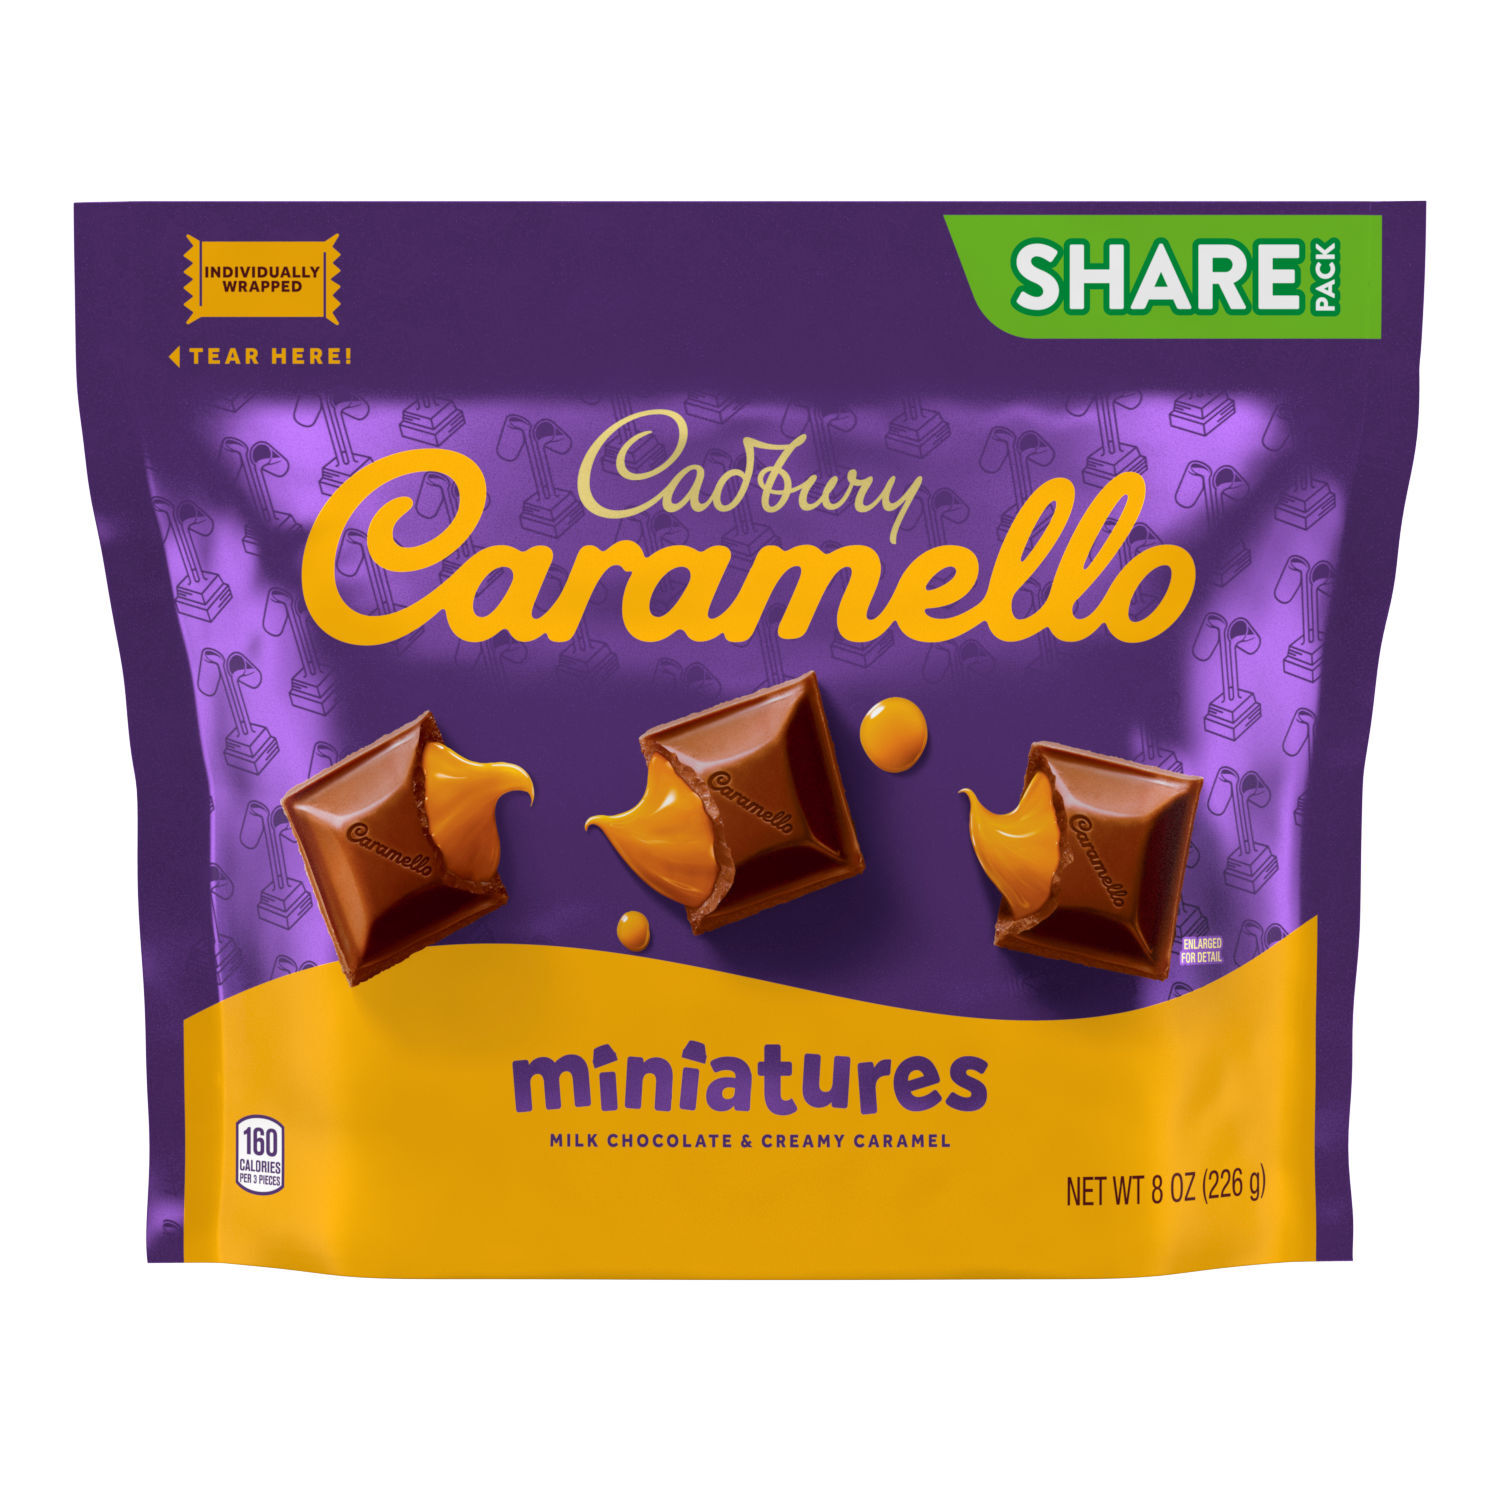 Cadbury Caramello Miniatures Milk Chocolate Caramel Candy Bag, 8 Oz